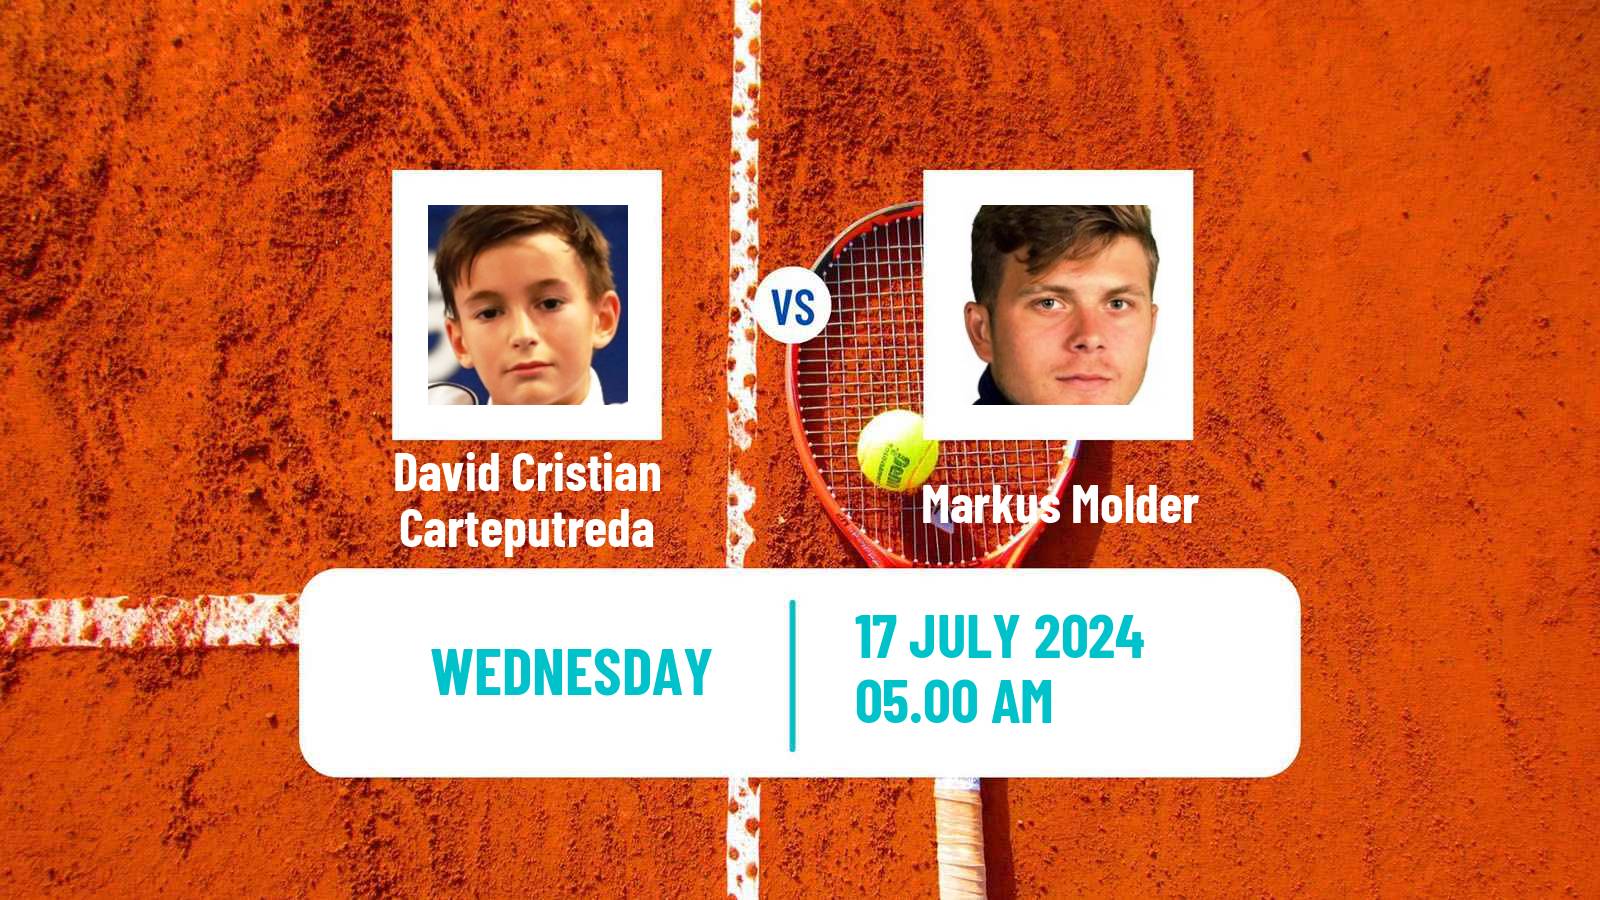 Tennis ITF M15 Bucharest 4 Men David Cristian Carteputreda - Markus Molder